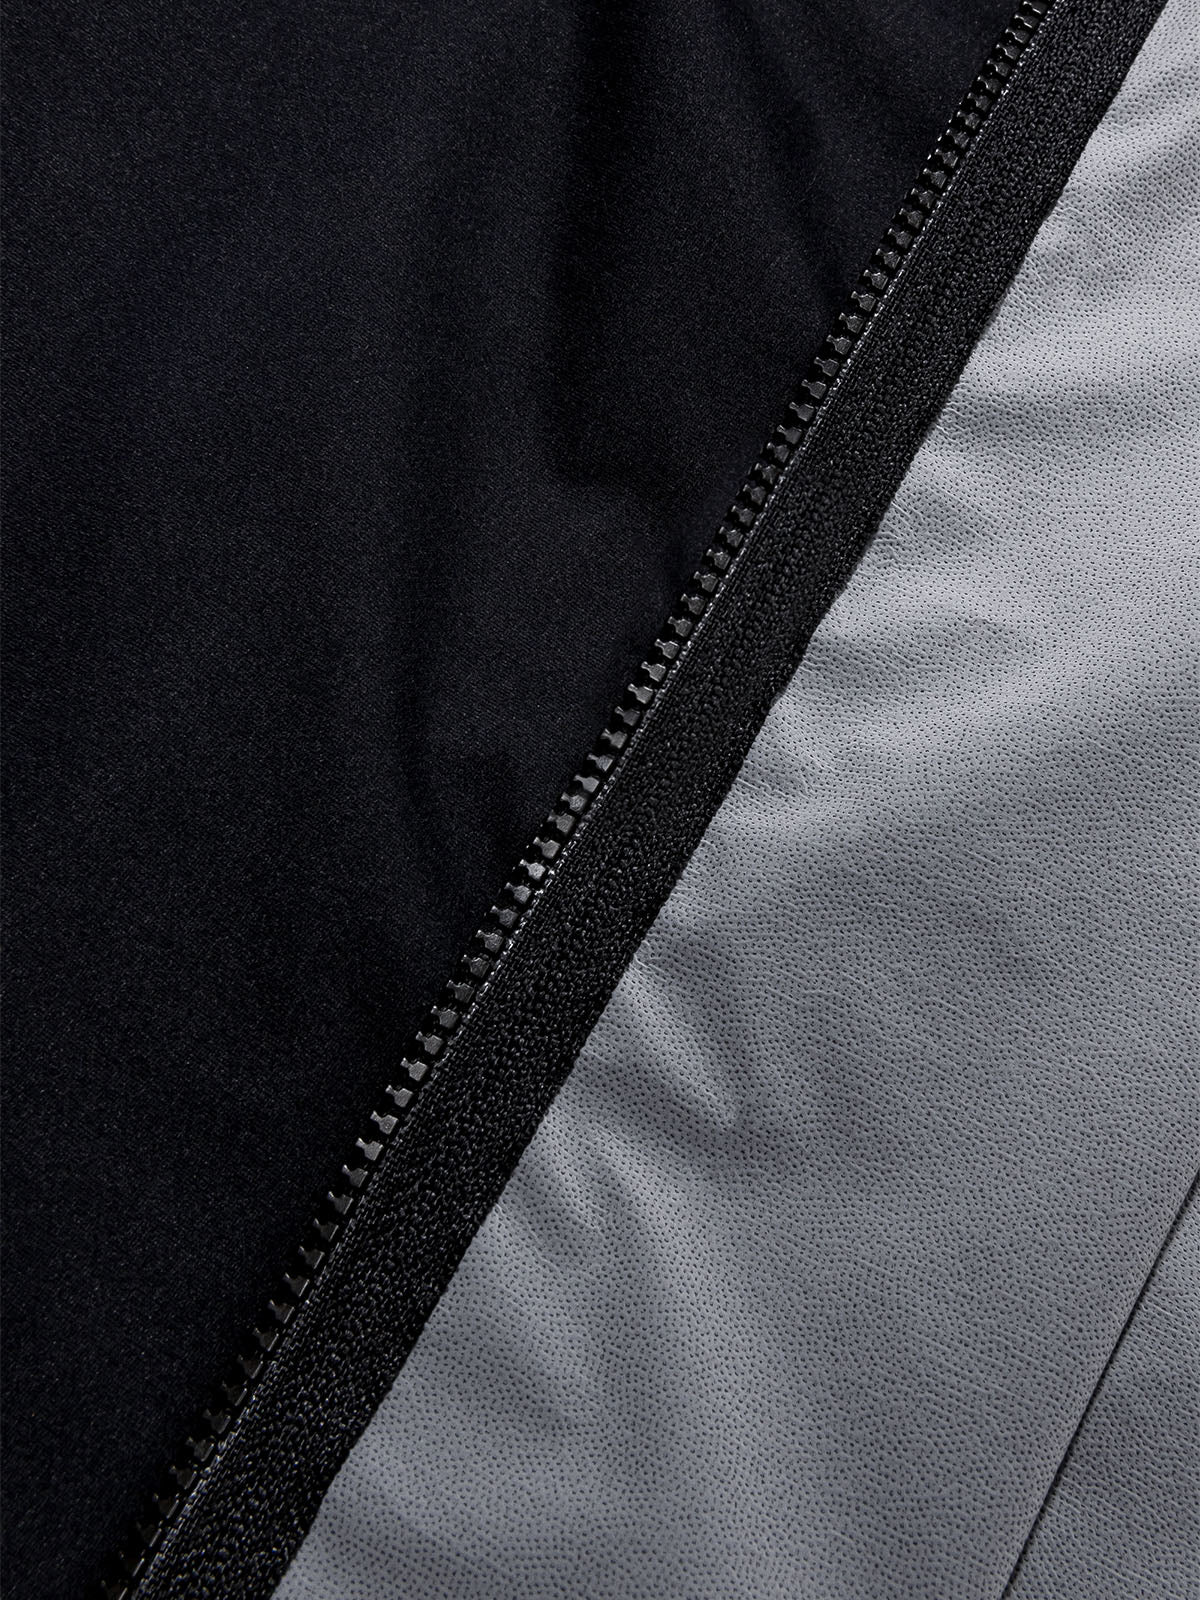 Altosphere Jacket by Mission Workshop - Säänkestävät laukut ja tekniset vaatteet - San Francisco & Los Angeles - Rakennettu kestämään - ikuinen takuu